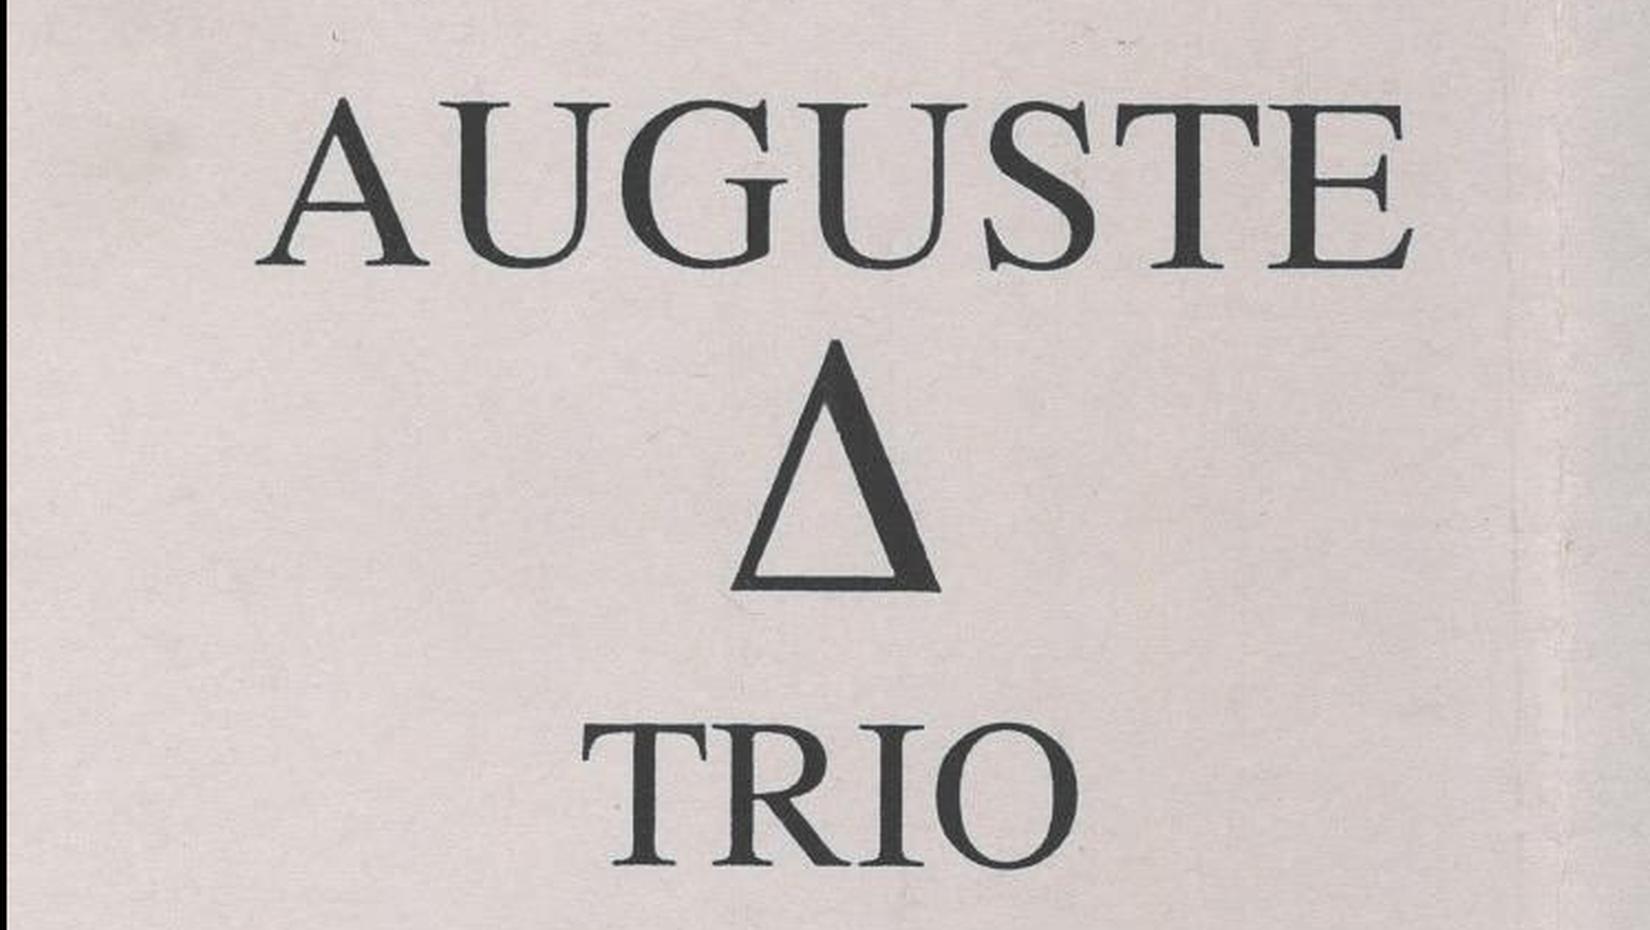 Auguste trio